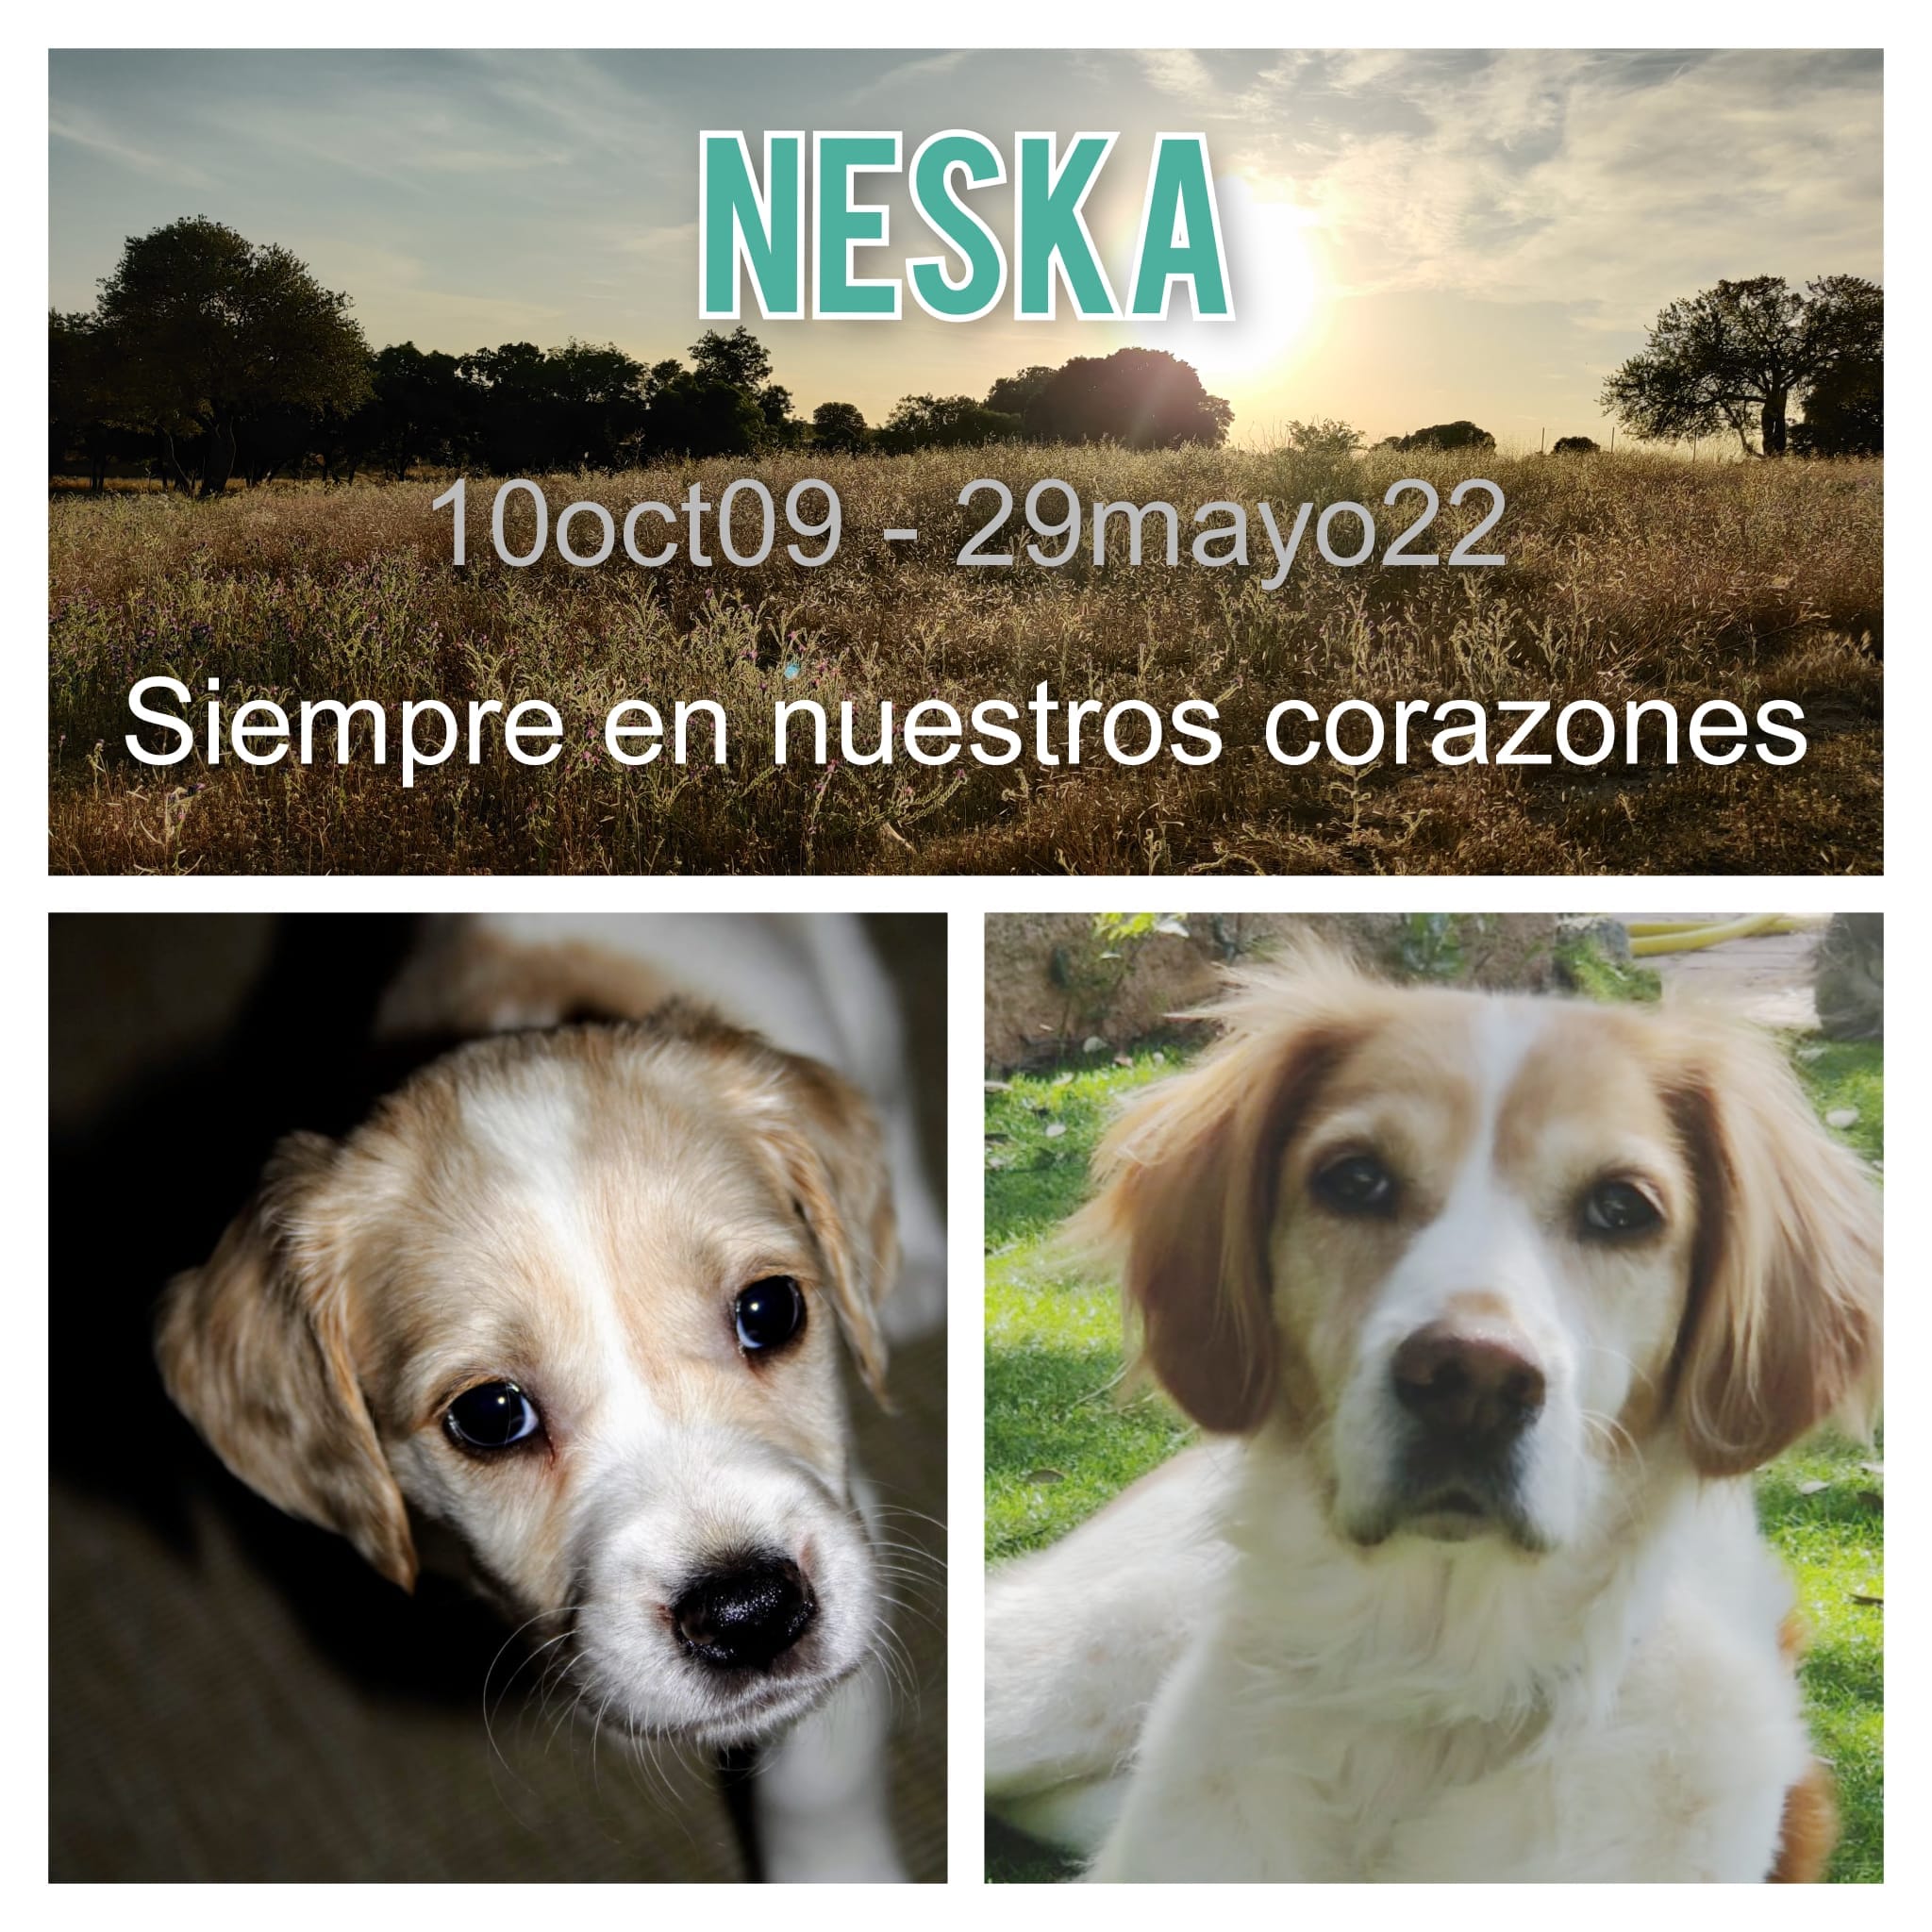 Hasta pronto, Neska